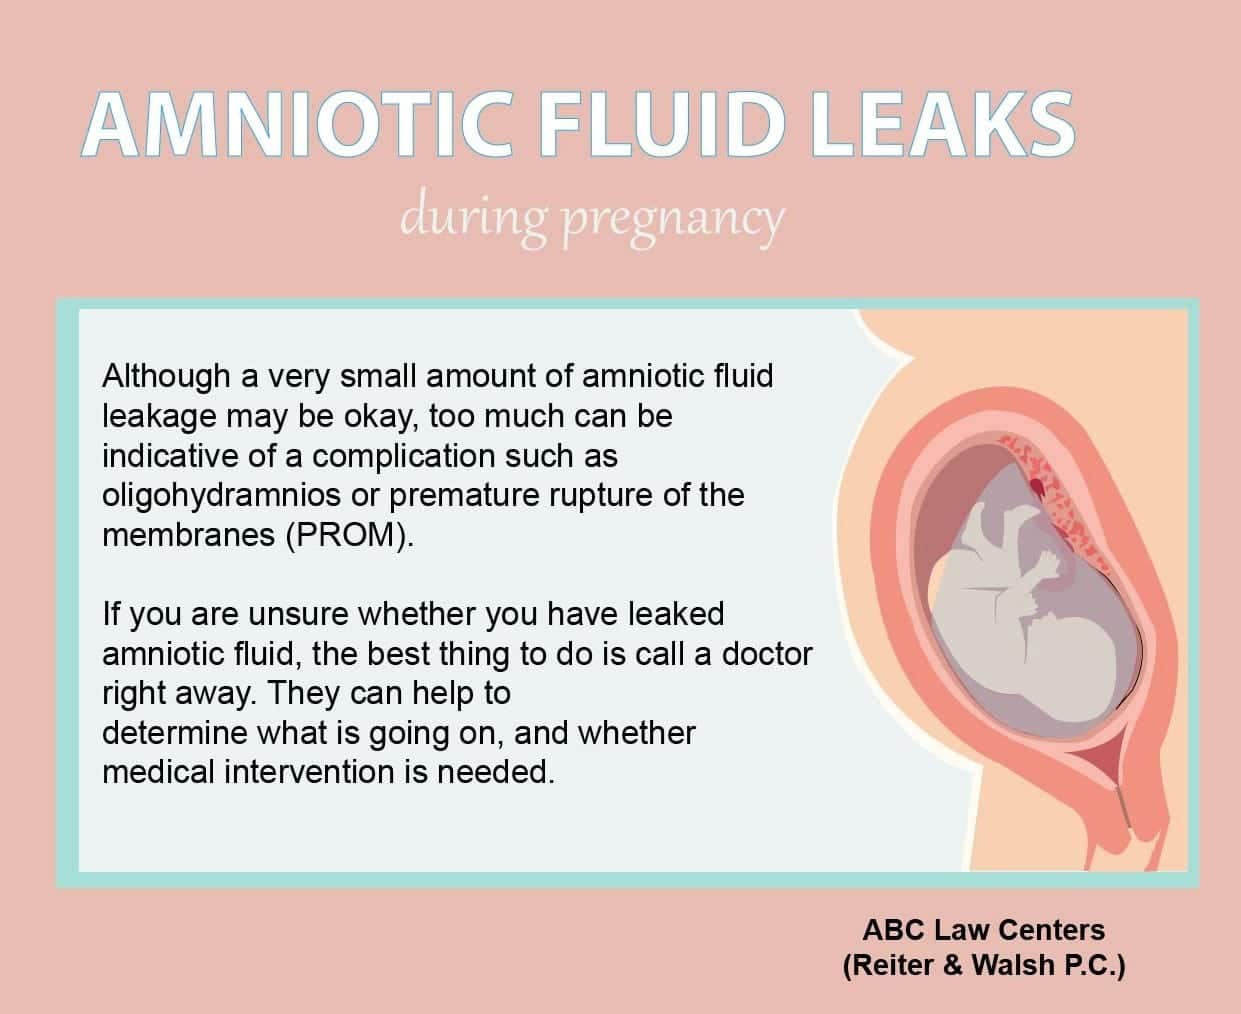 Amniotic fluid leaks